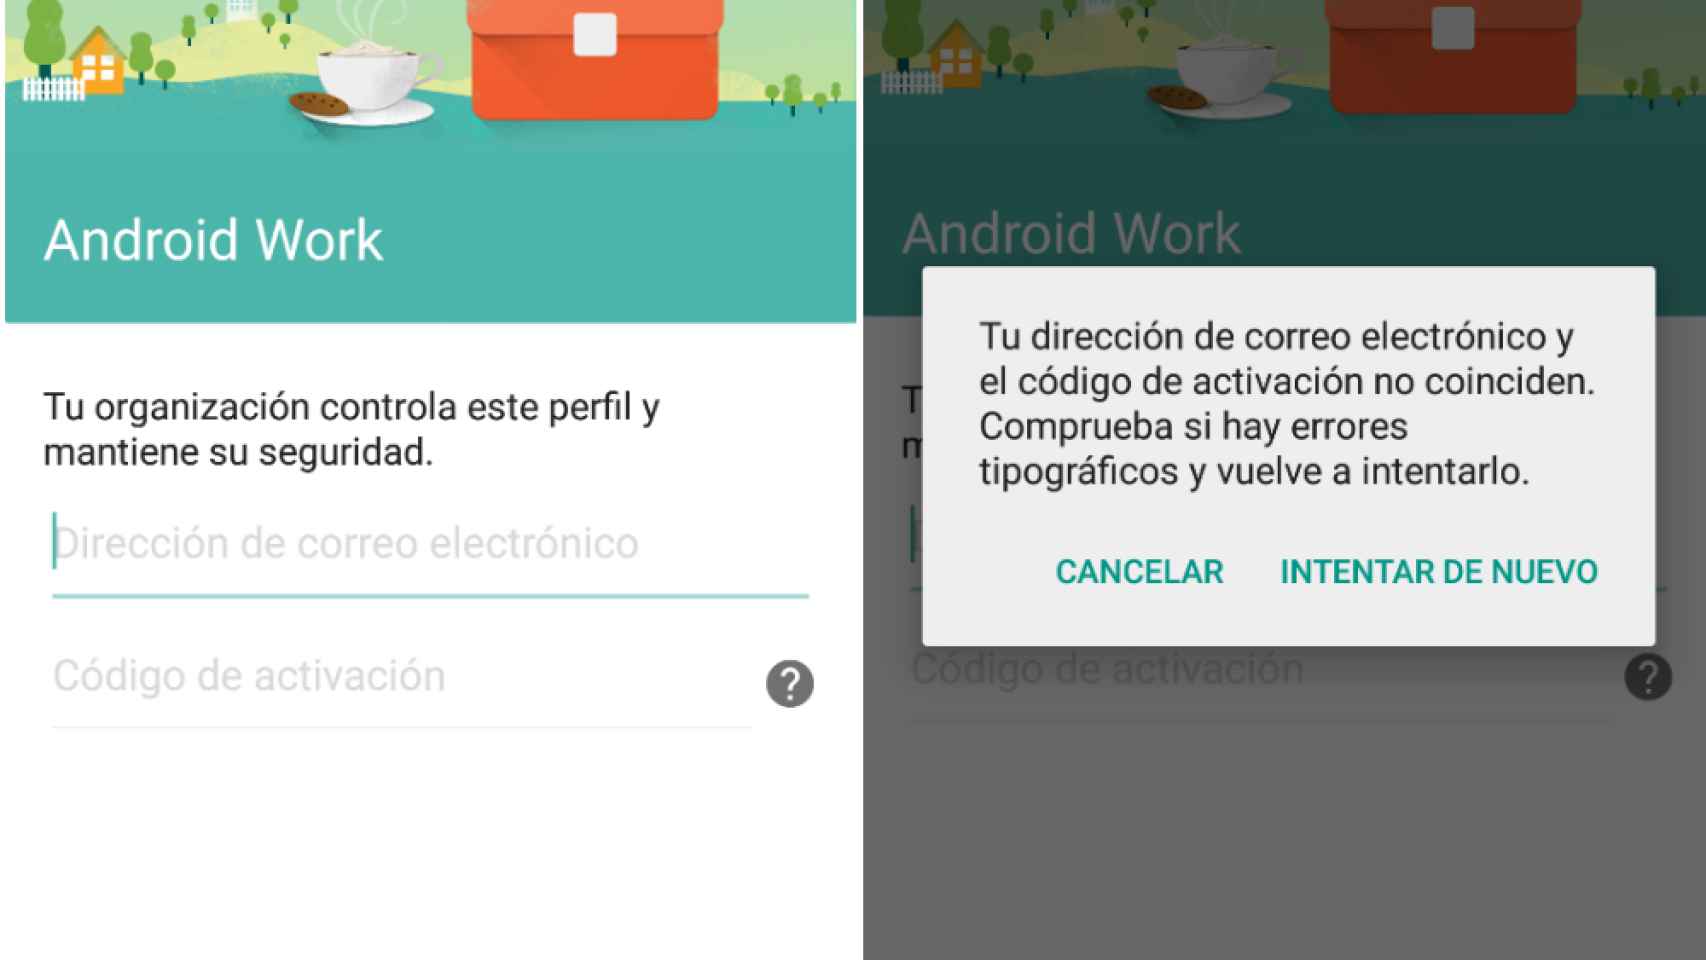 Android Work, la nueva aplicación de Google oculta en la preview de Lollipop